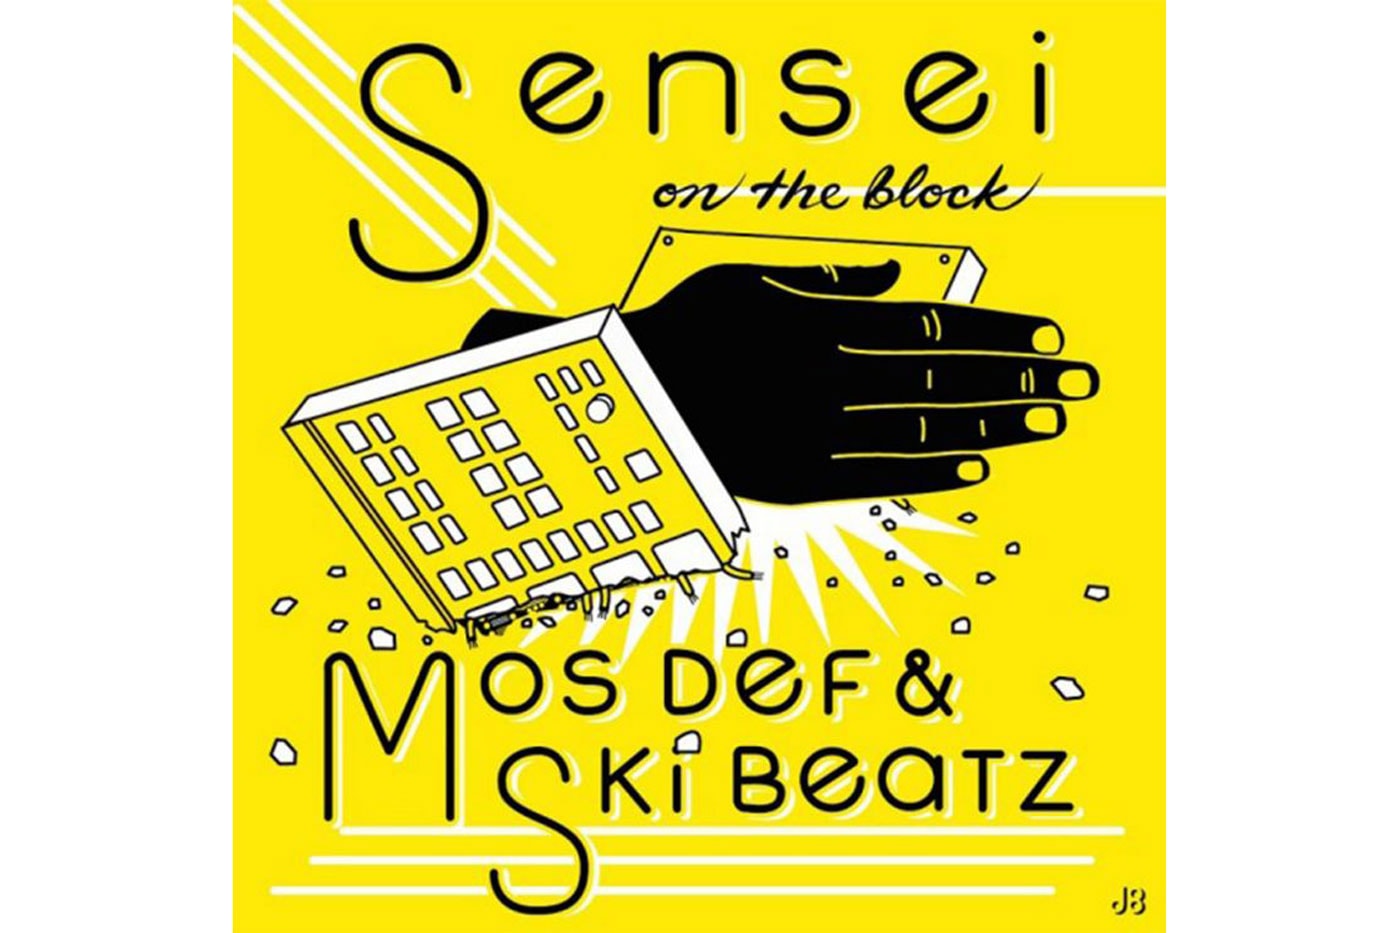 Mos Def – Sensei On The Block (Produced by Ski Beatz)